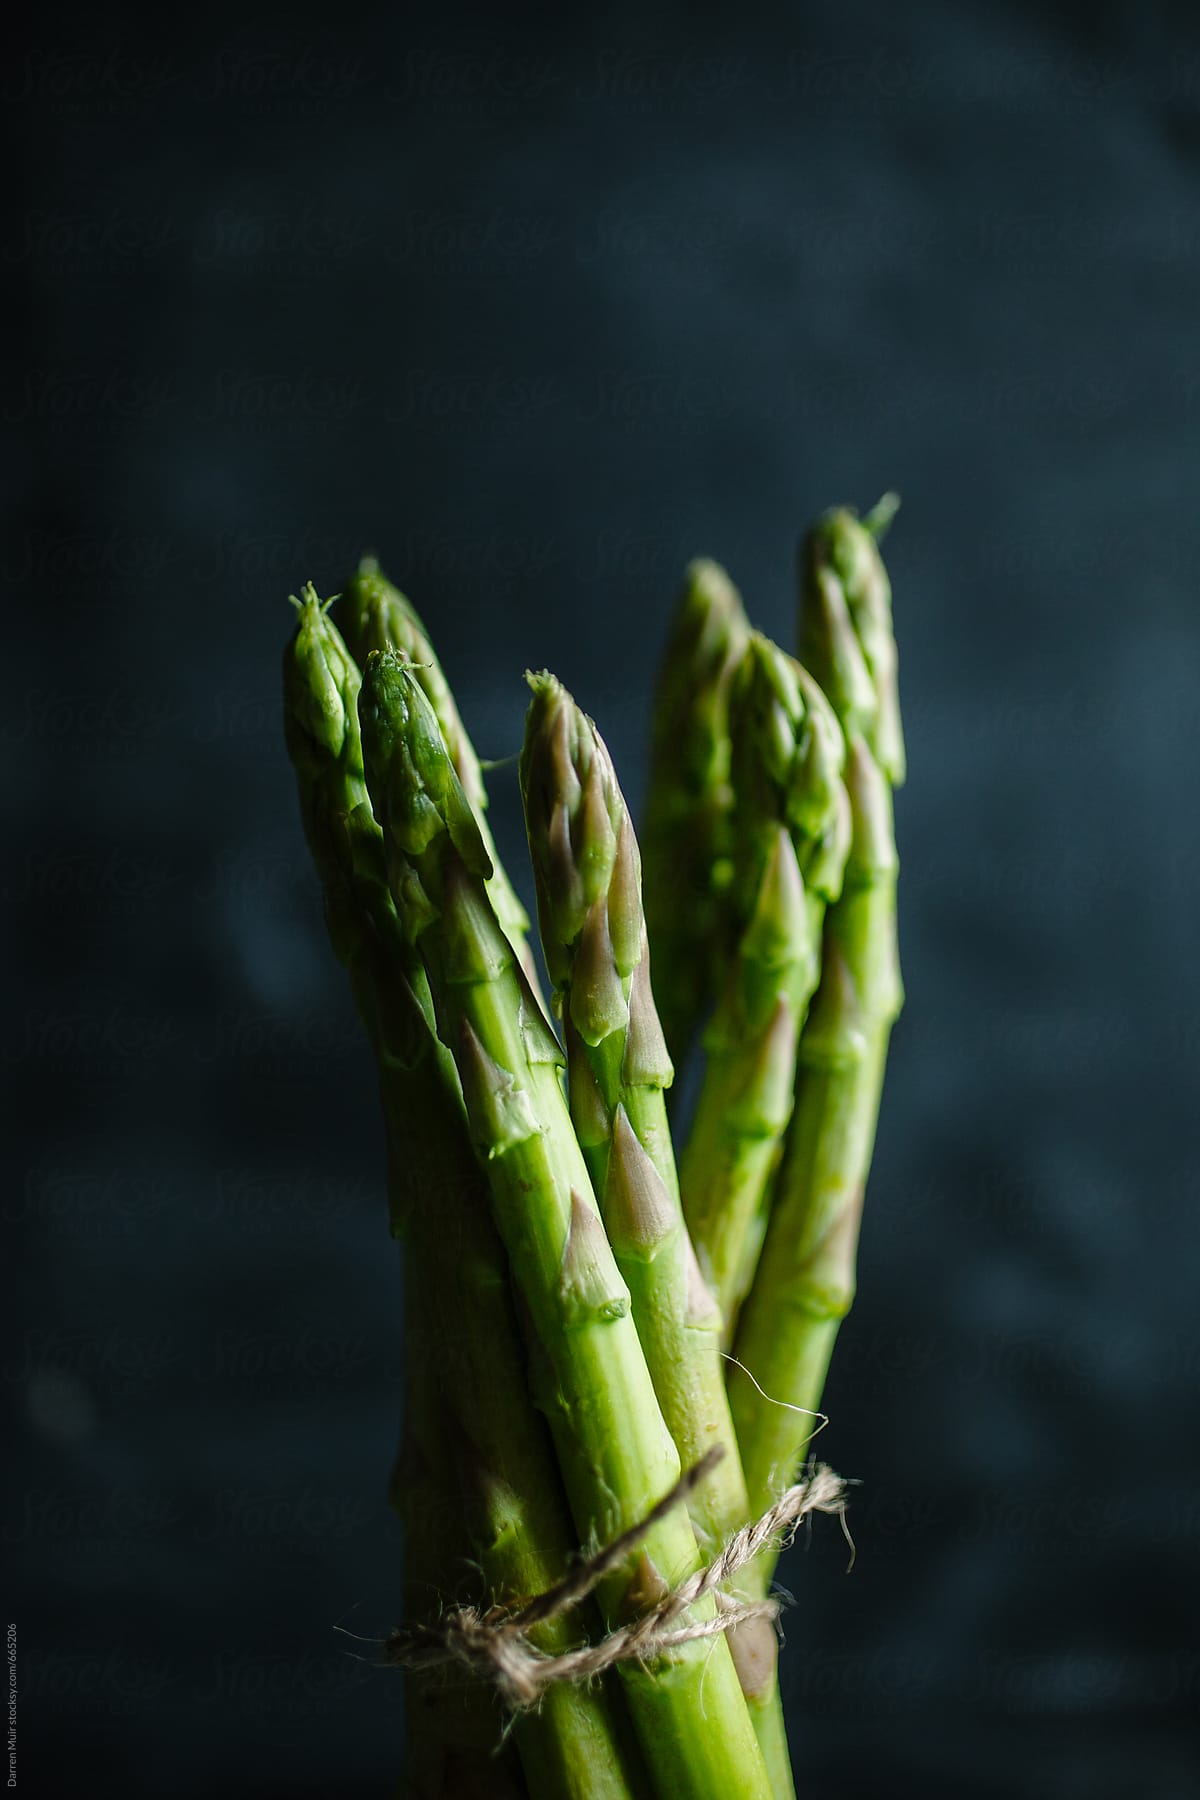 Raw asparagus tips.